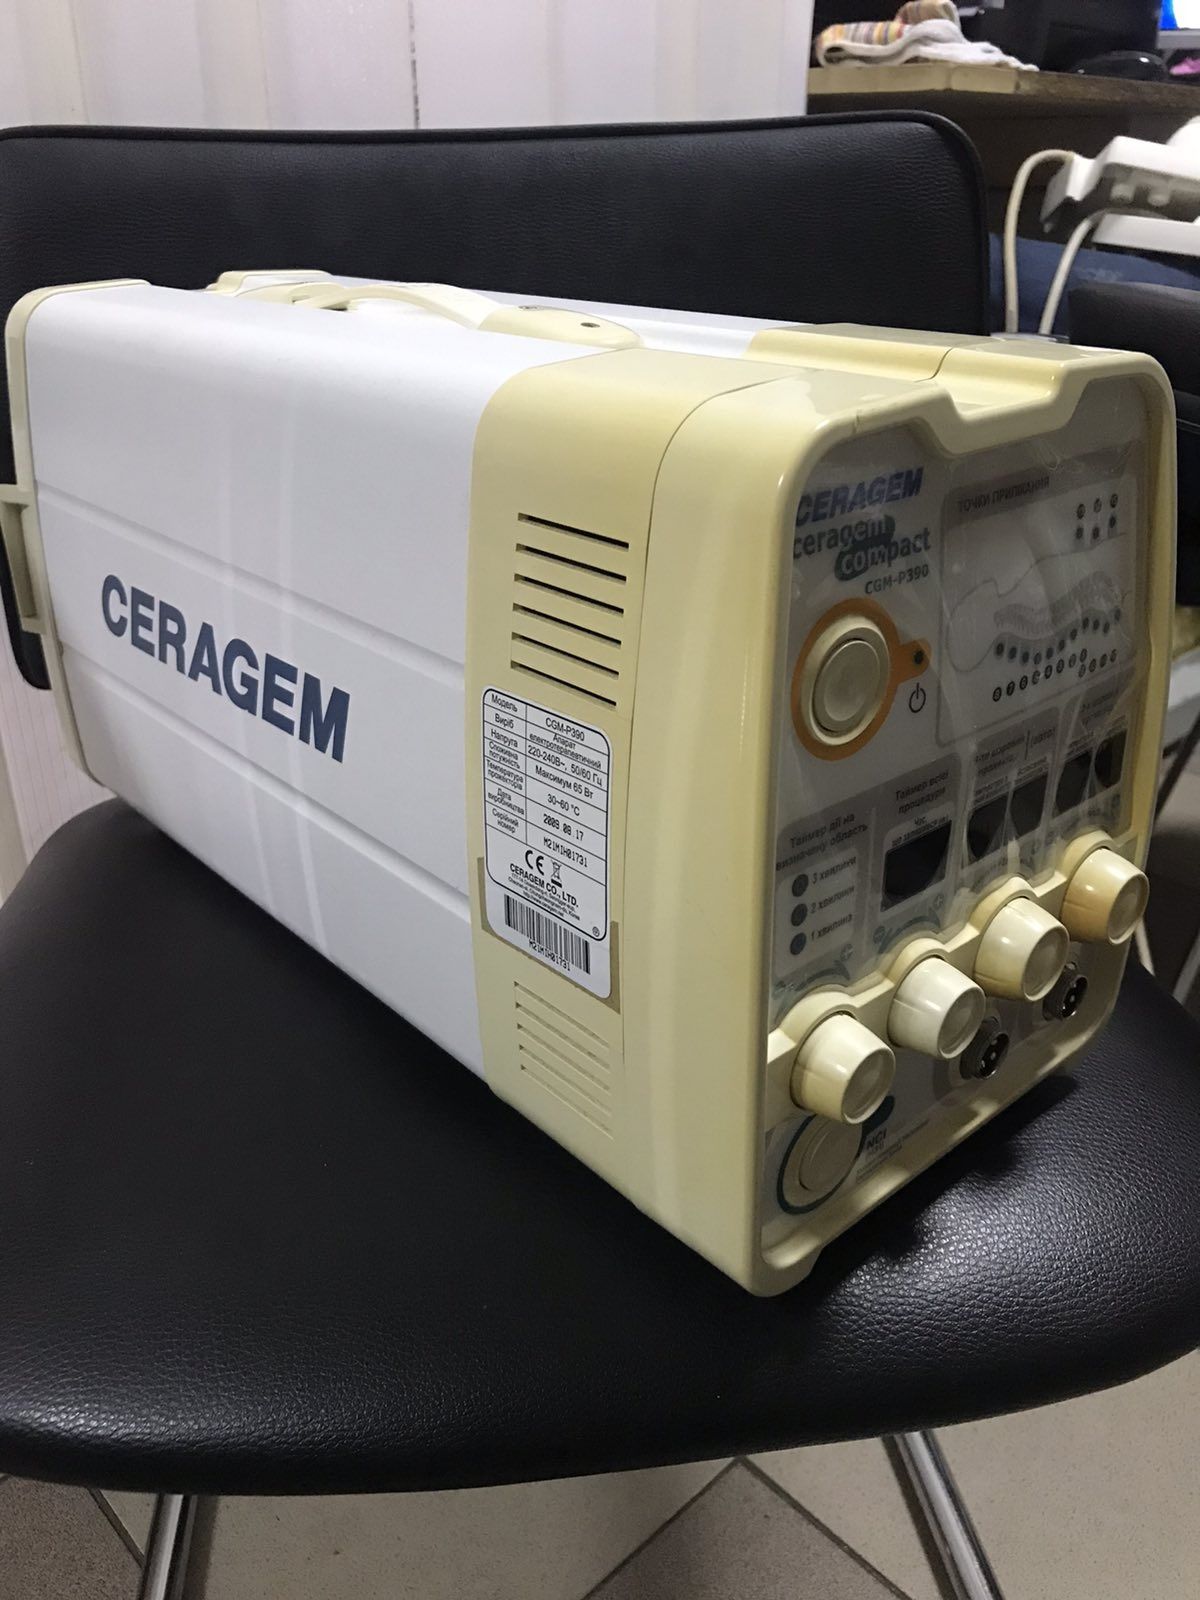 Аппарат электротерапевтический Ceragem CGM P390, массажер